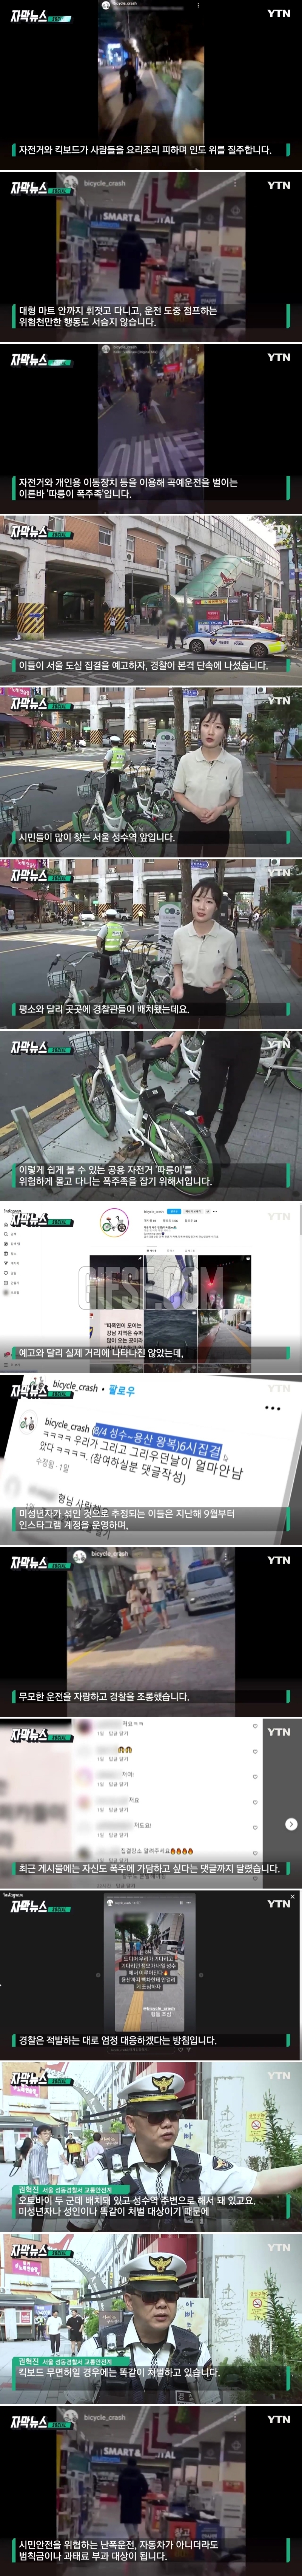 ',따릉이 폭주족',에 경찰까지 배치.SNS 타고 퍼졌다.news_1.jpg